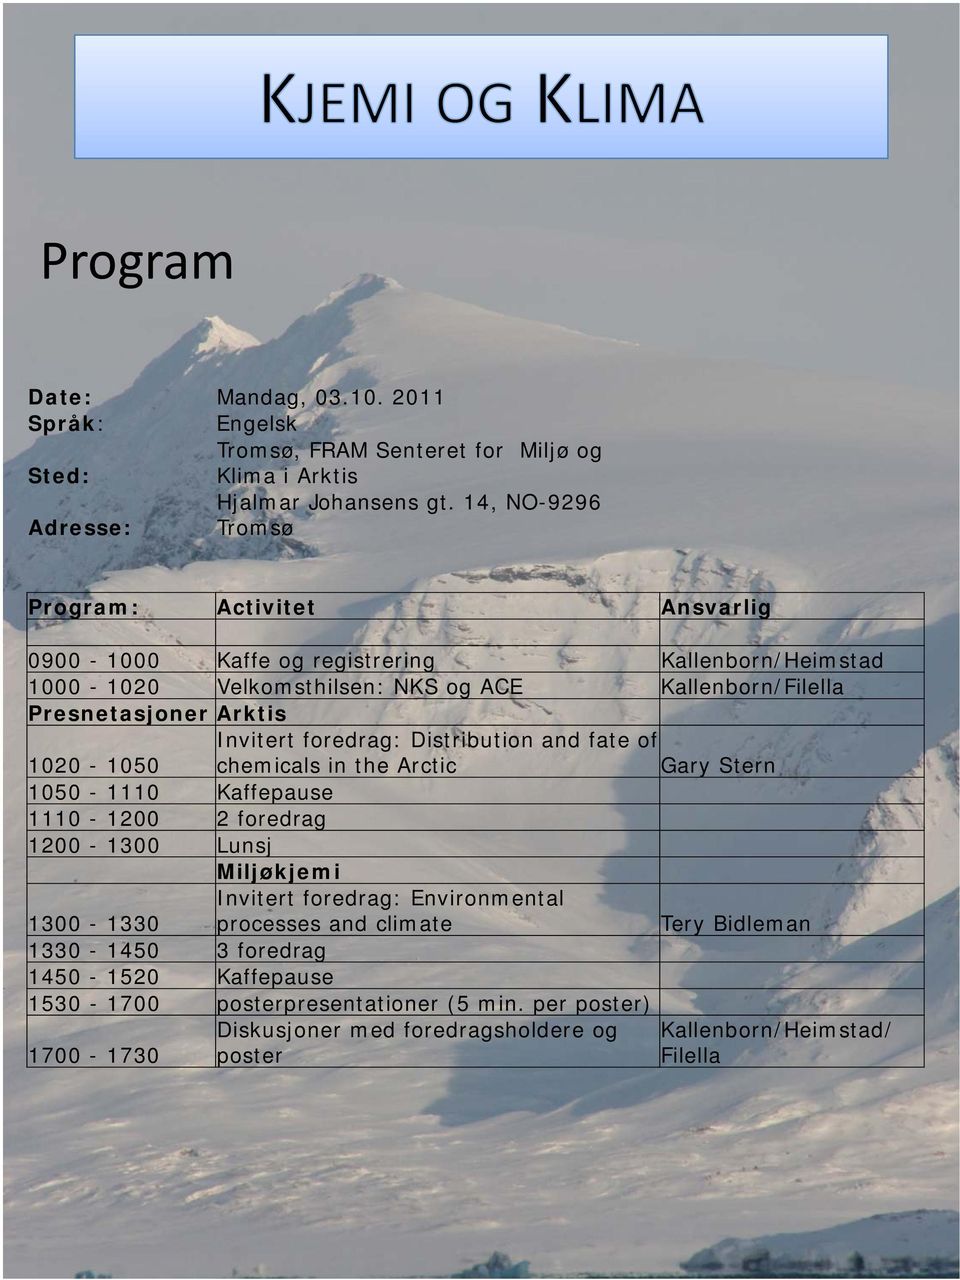 Arktis Invitert foredrag: Distribution and fate of 1020-1050 chemicals in the Arctic Gary Stern 1050-1110 Kaffepause 1110-1200 2 foredrag 1200-1300 Lunsj Miljøkjemi 1300-1330